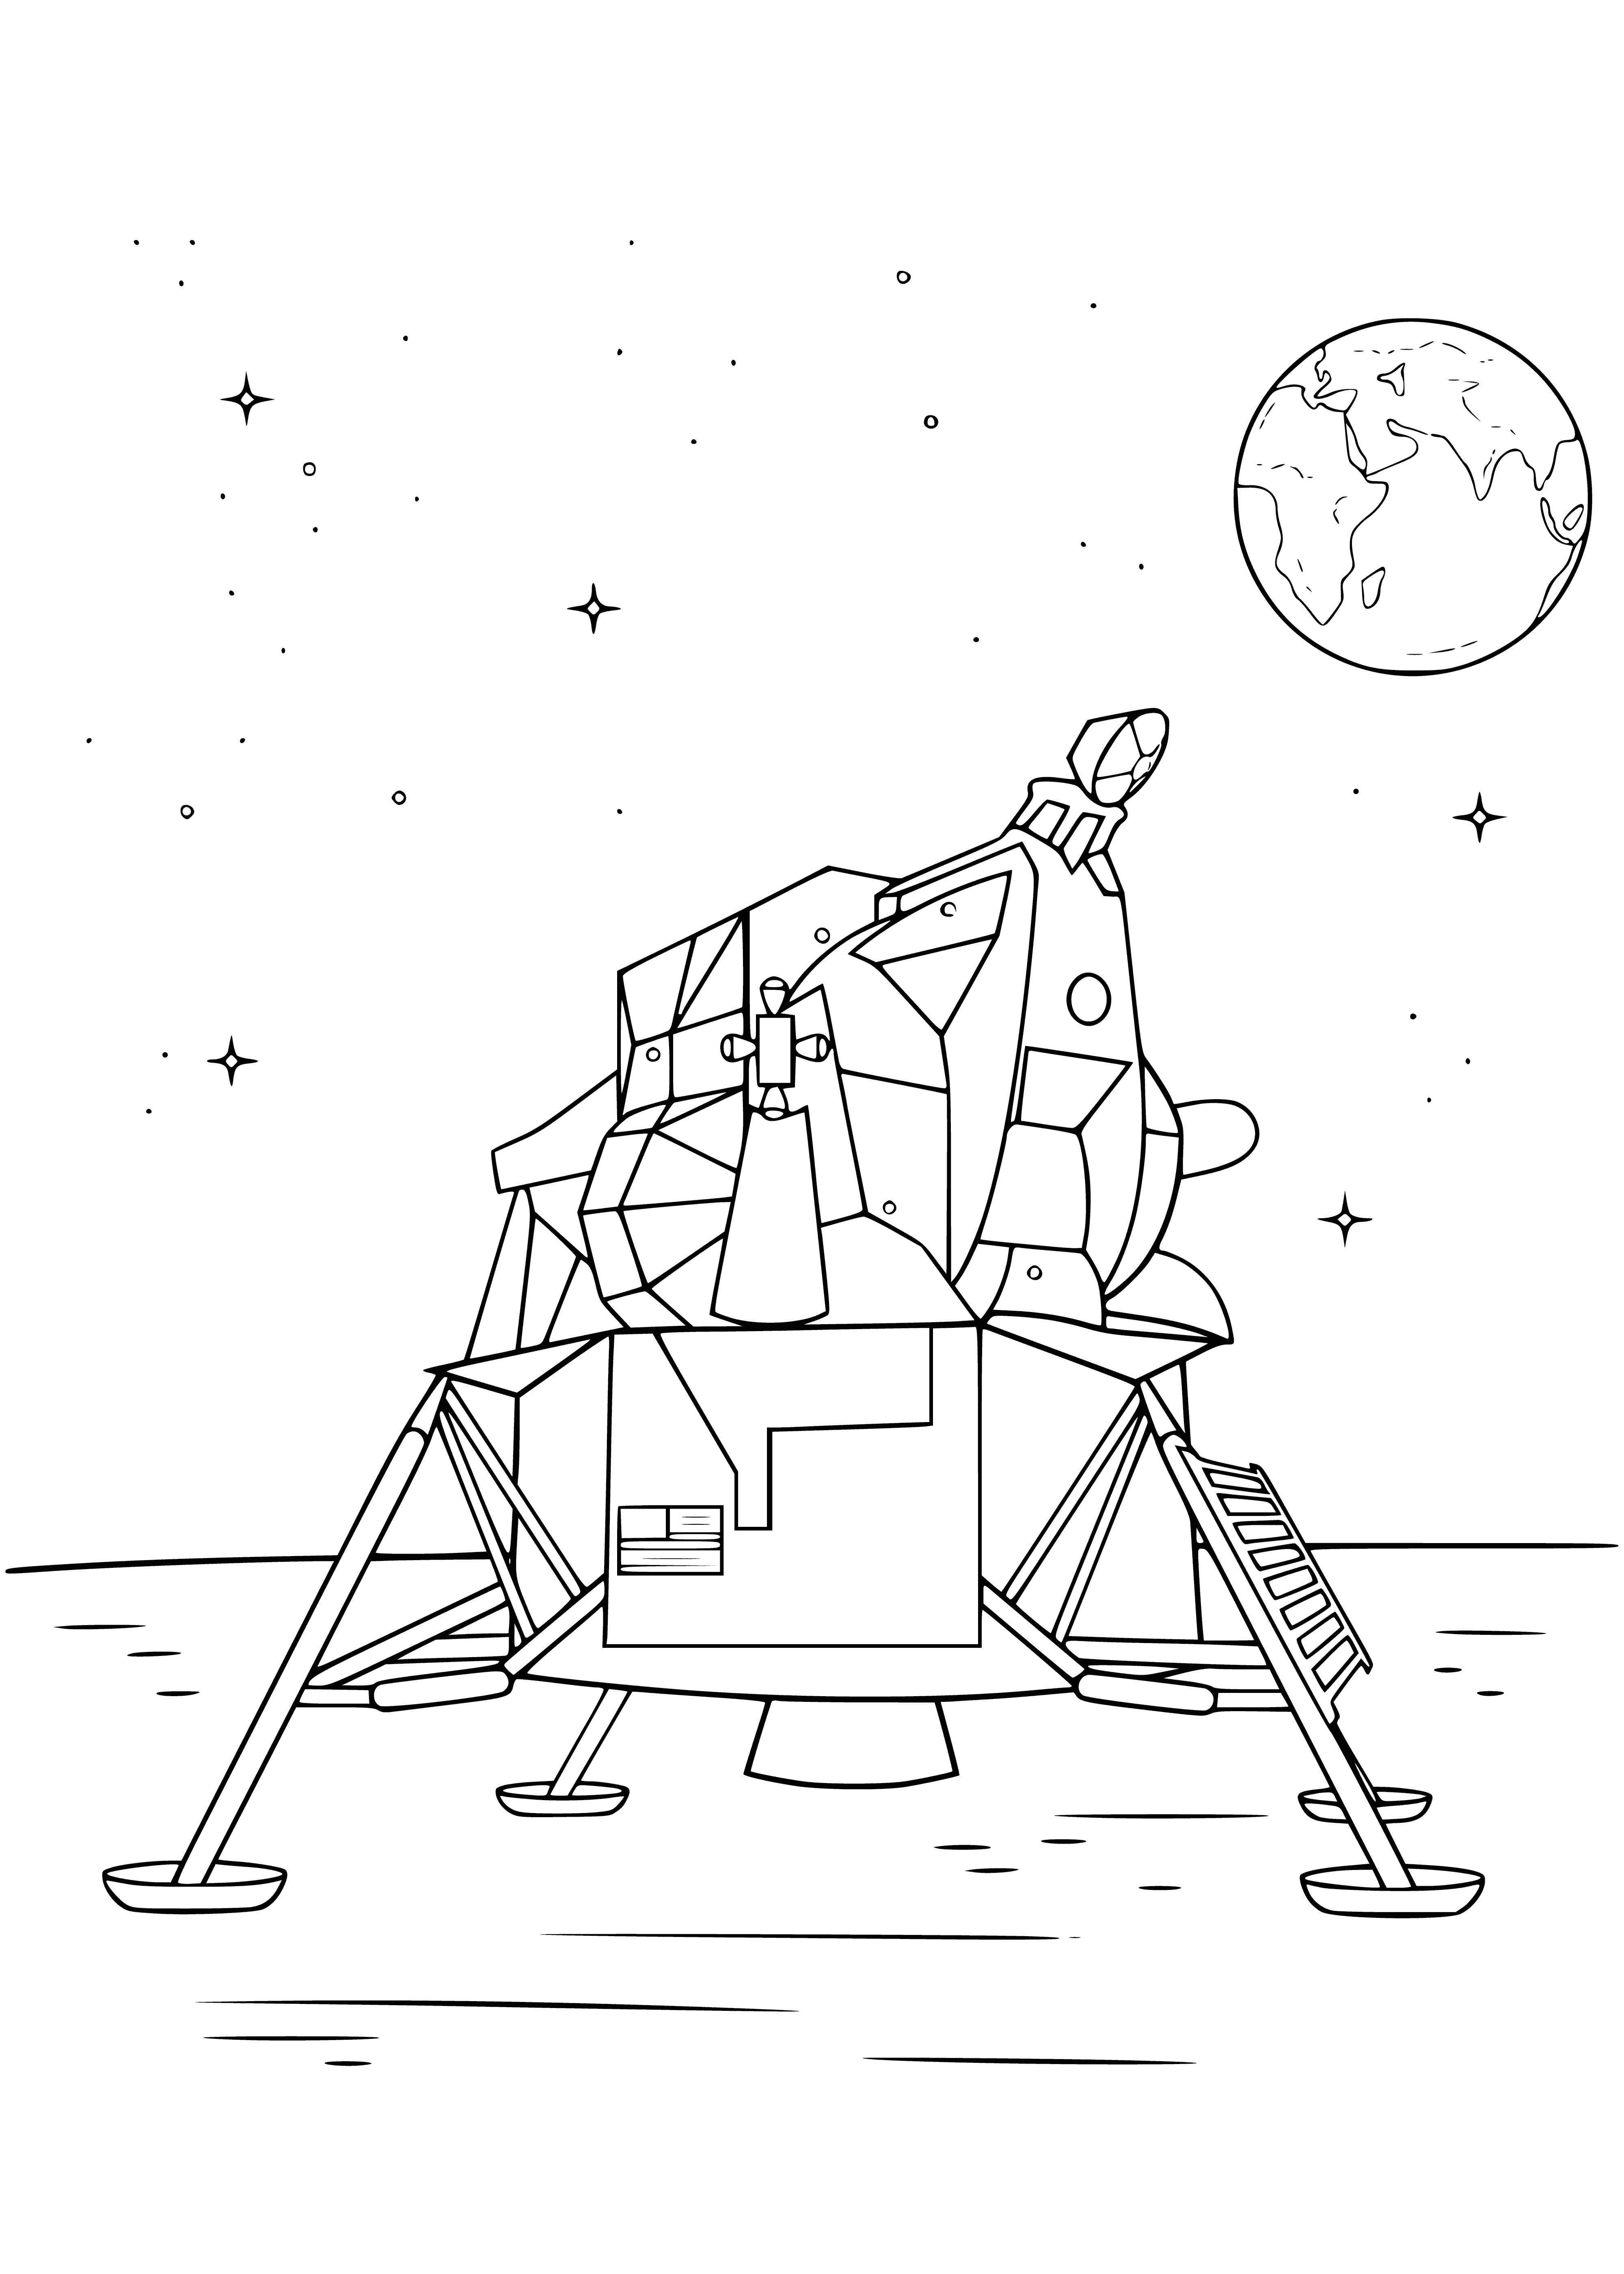 Moonwalker coloring page